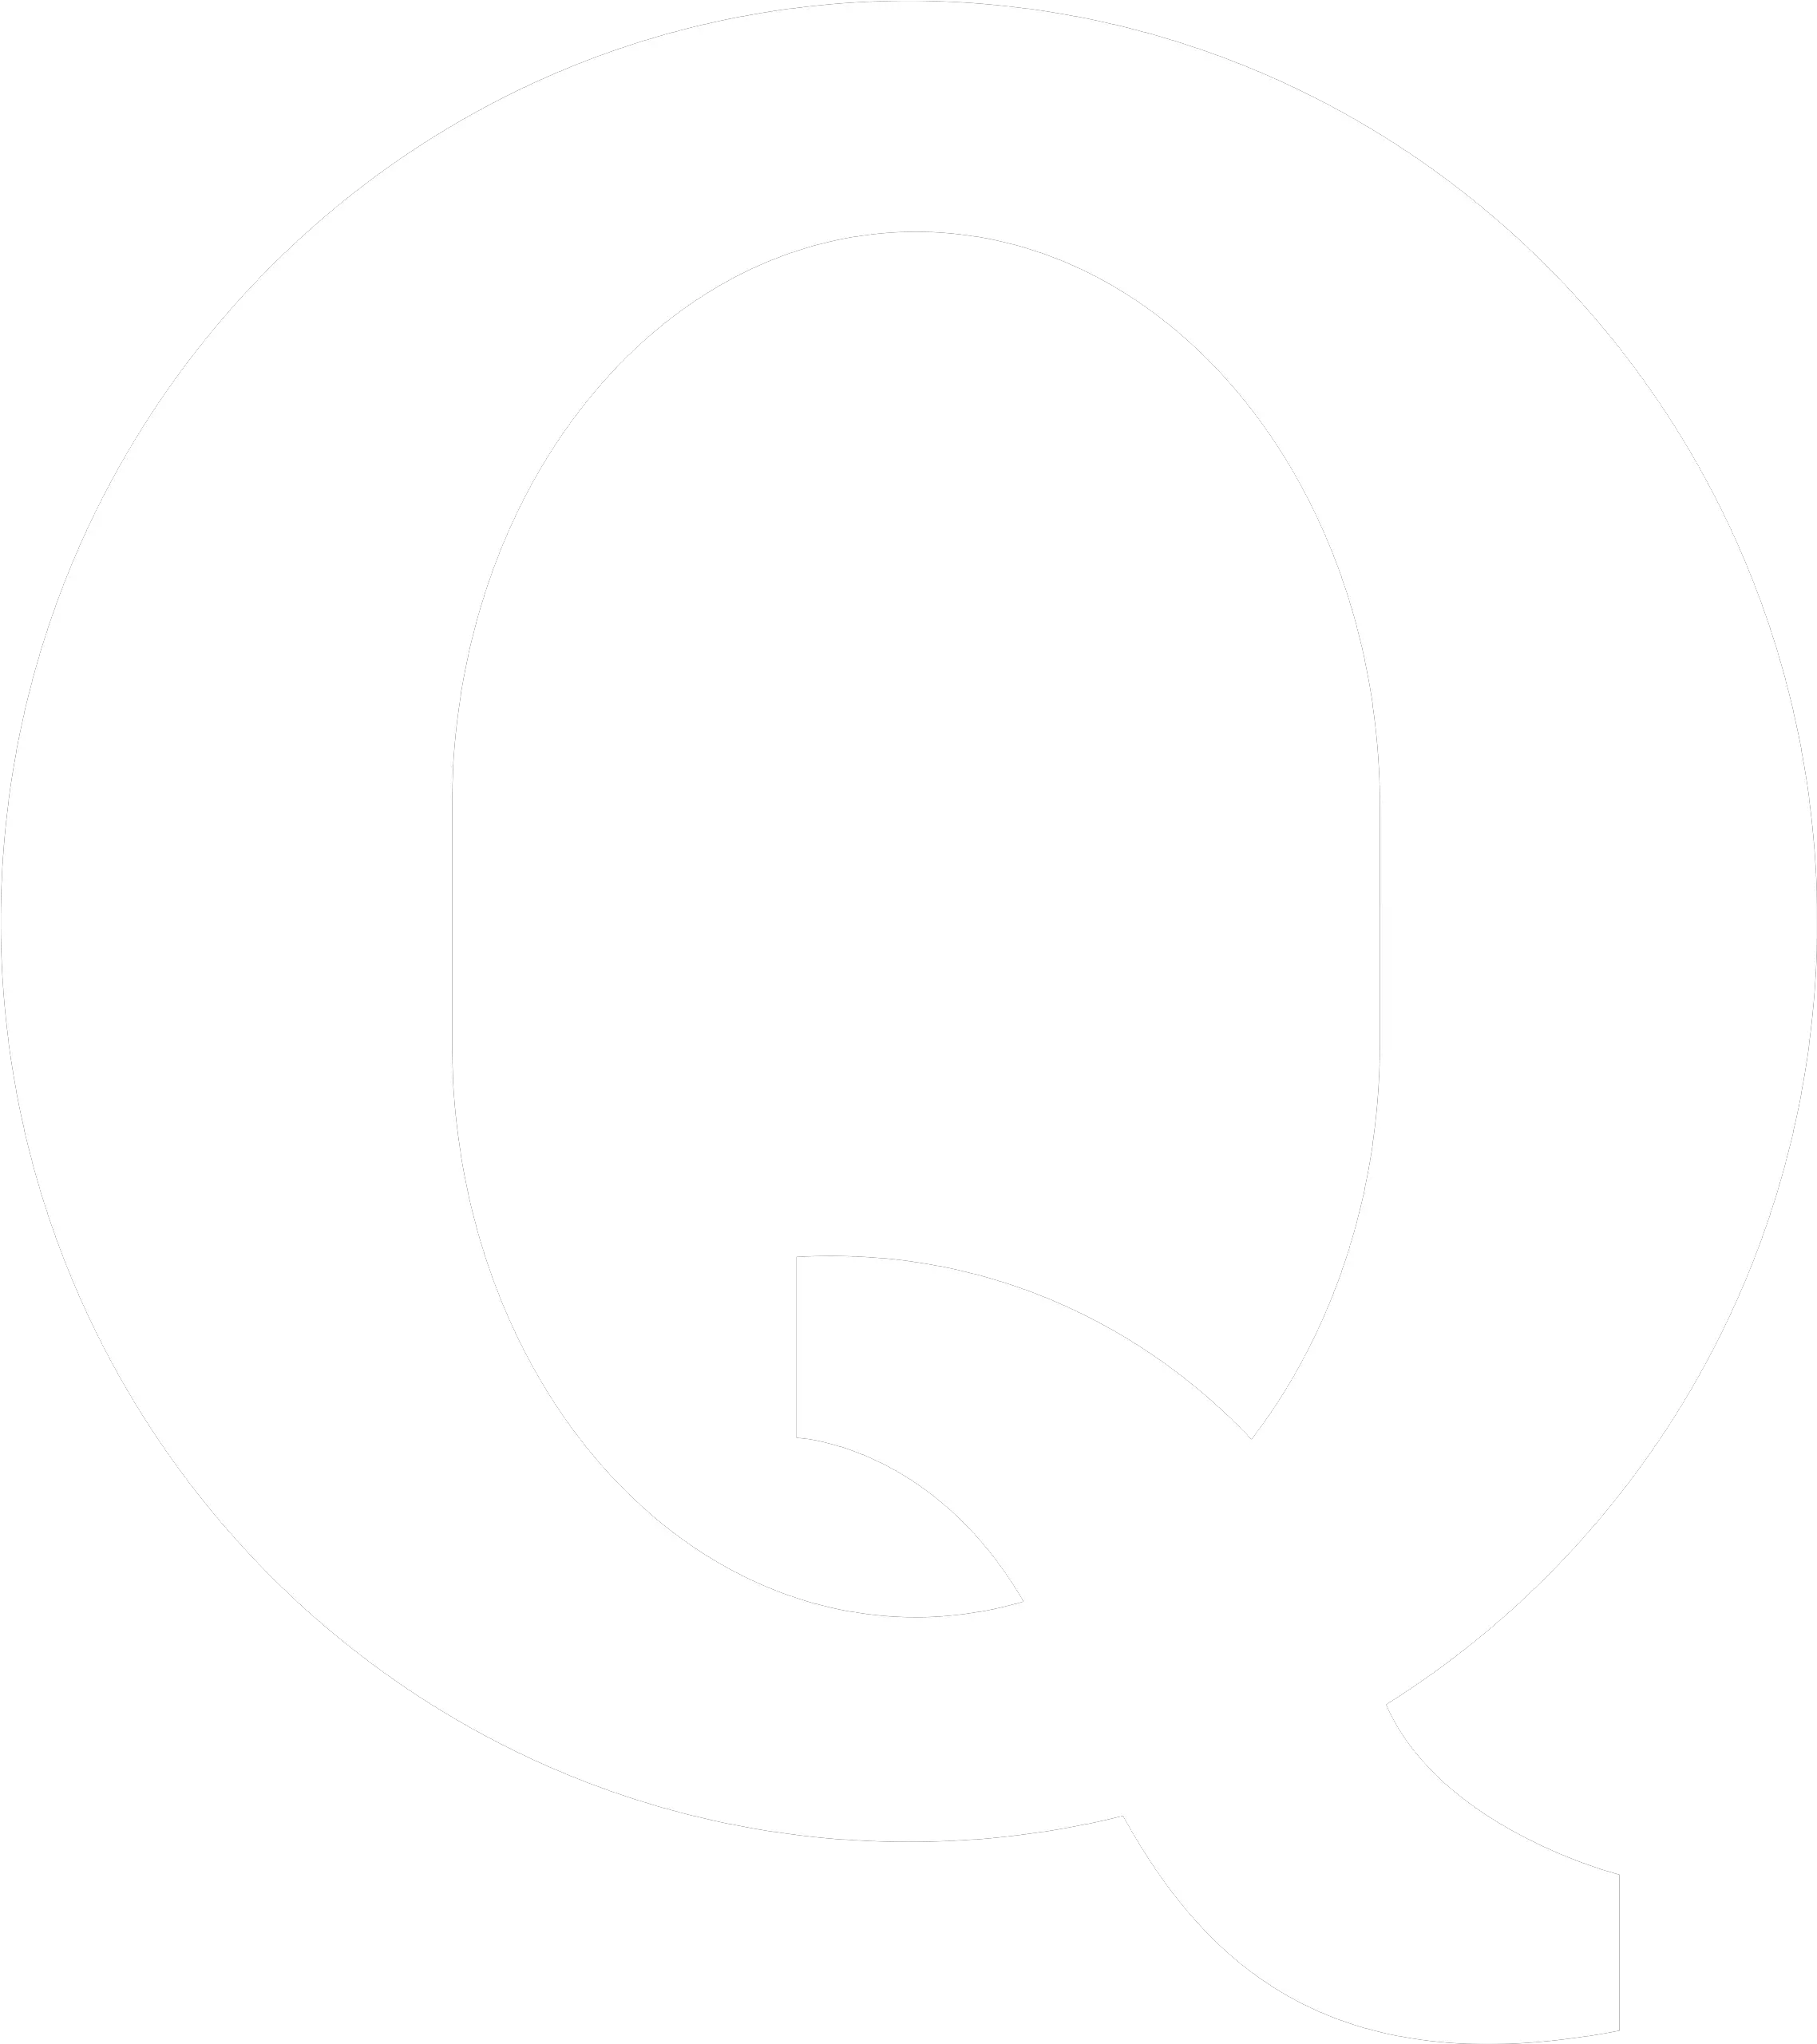 Quora Icon Png Ico Or Icns Quora Icon Black Quora Logo